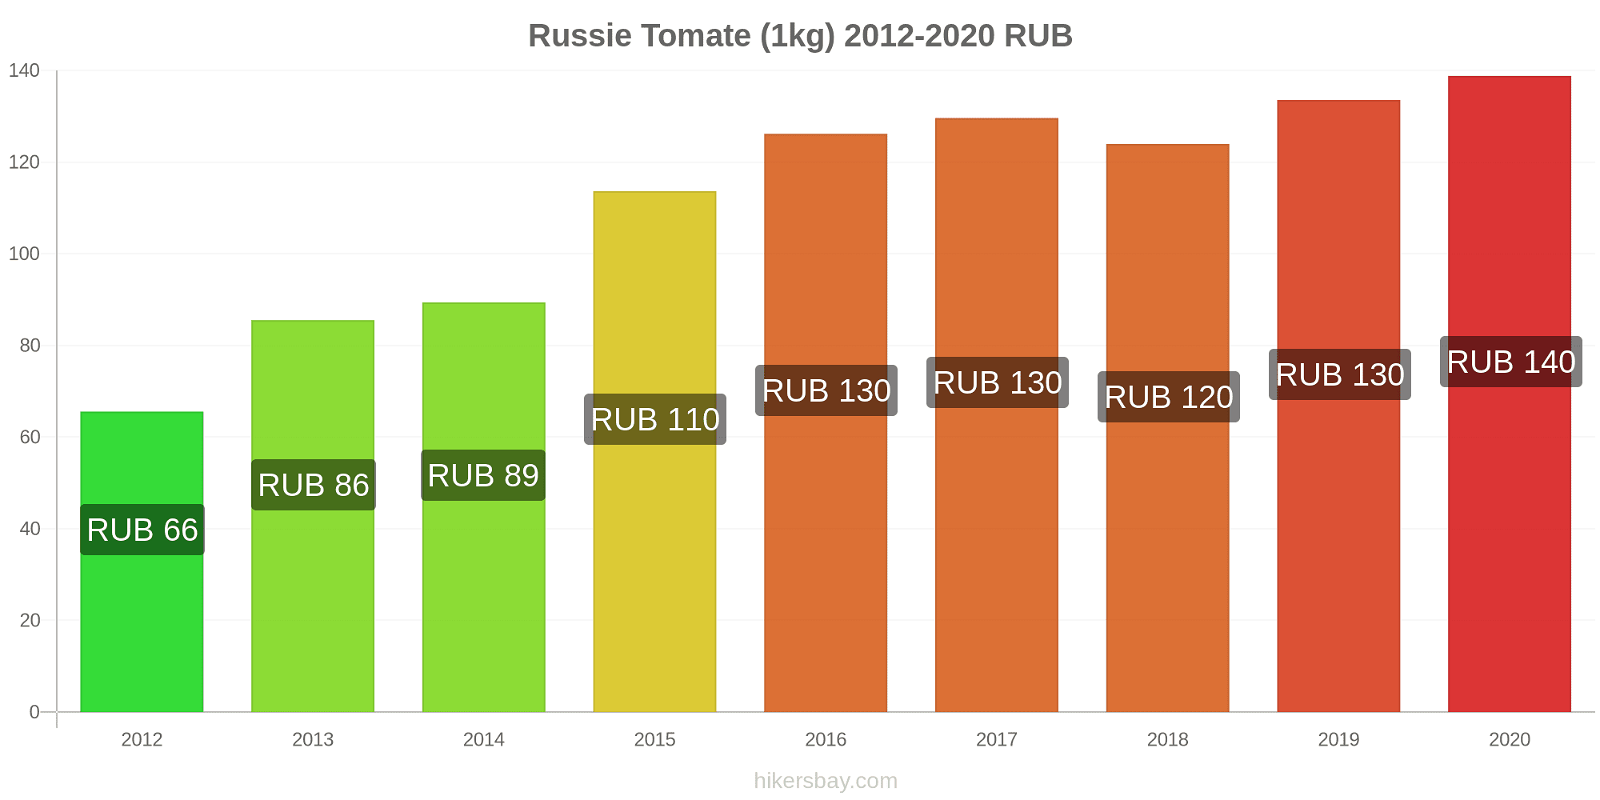 Russie changements de prix Tomate (1kg) hikersbay.com